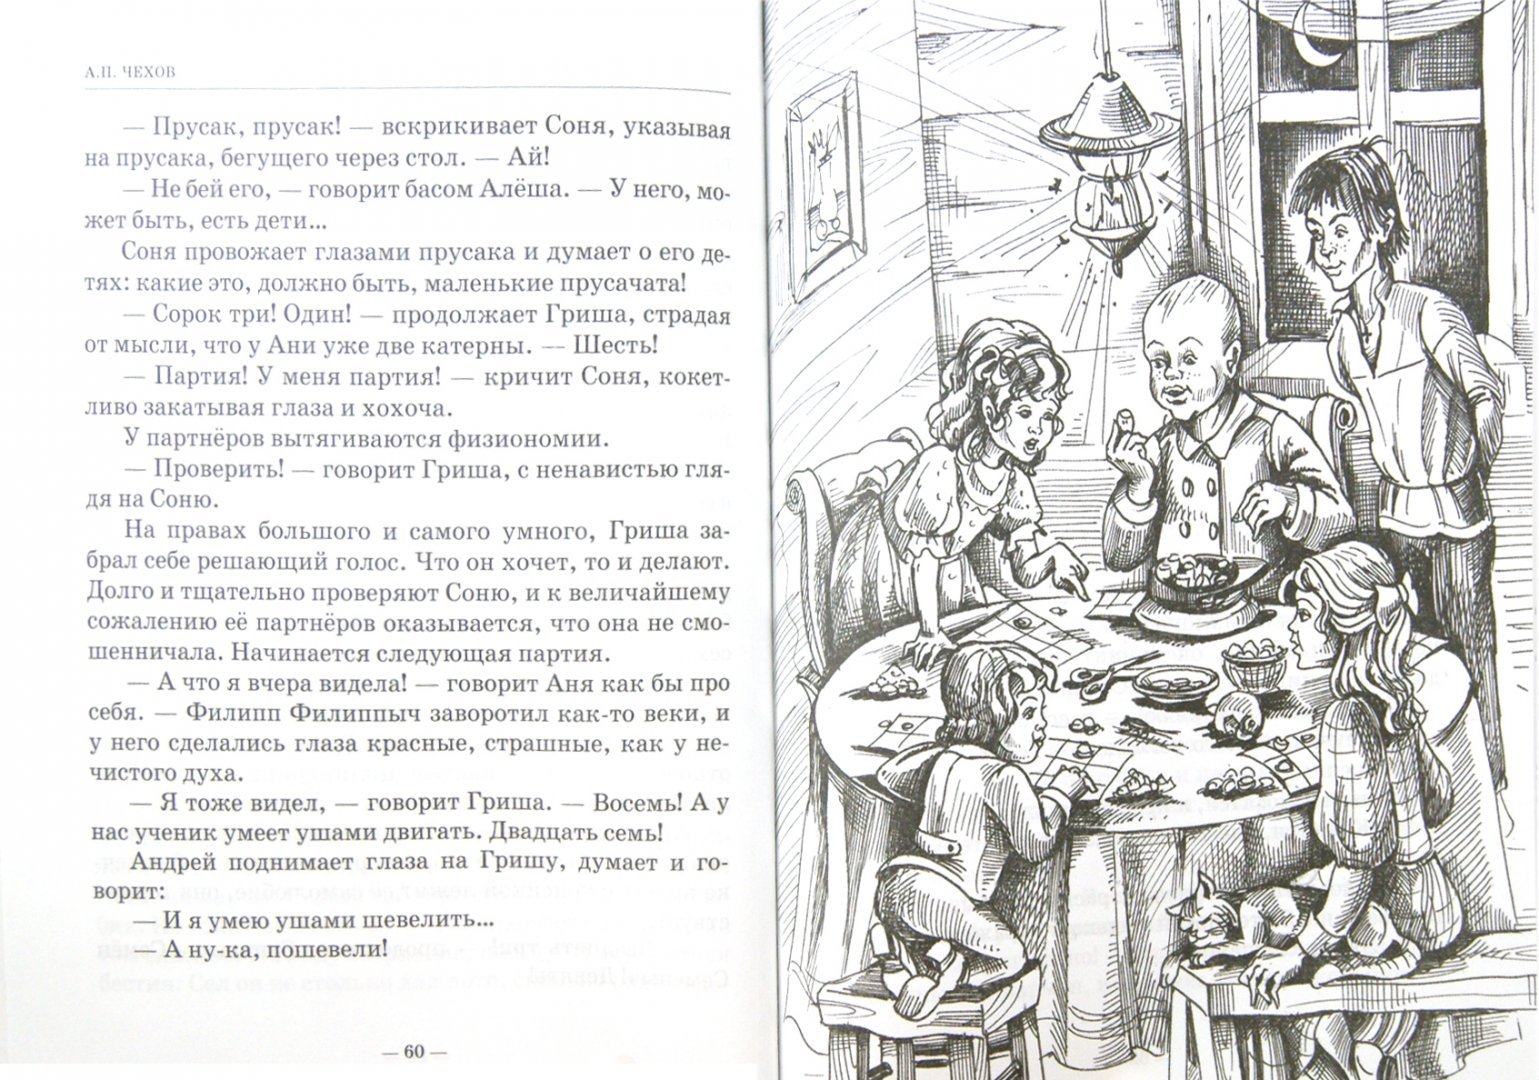 Иллюстрация к рассказу детвора Чехов